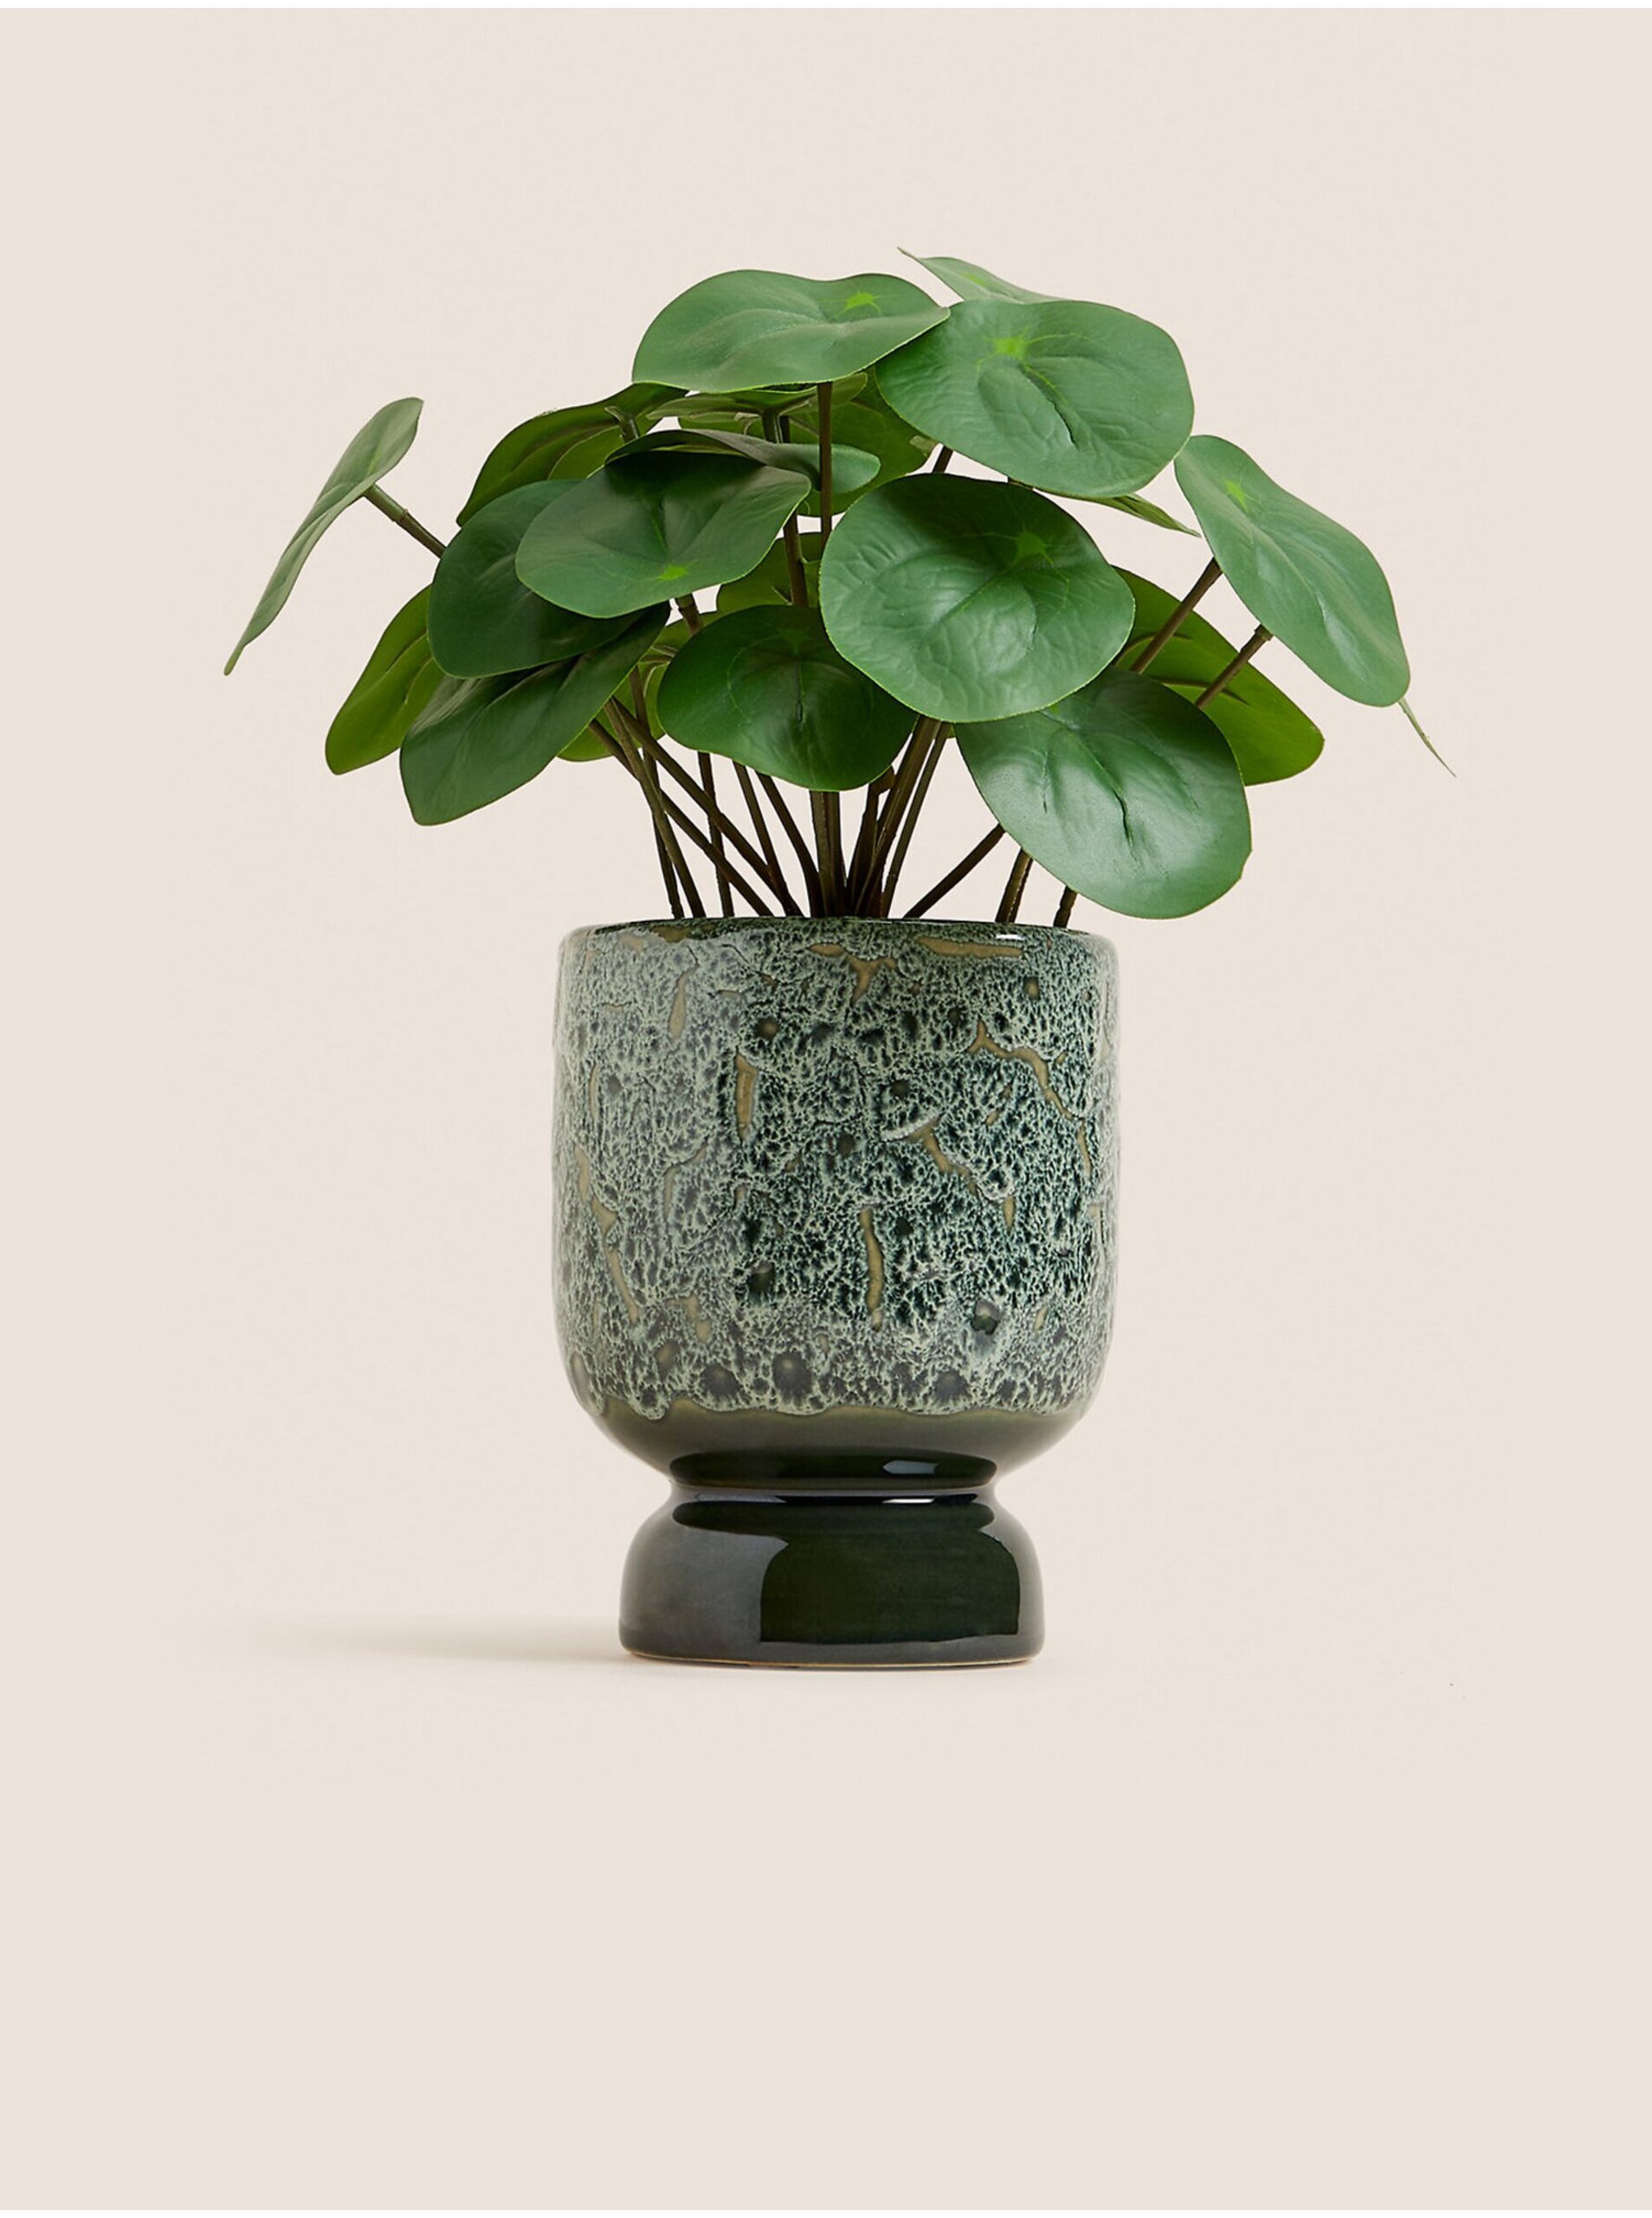 E-shop Zelená umělá rostlina pilea v keramickém květináči v zelené barvě Marks & Spencer